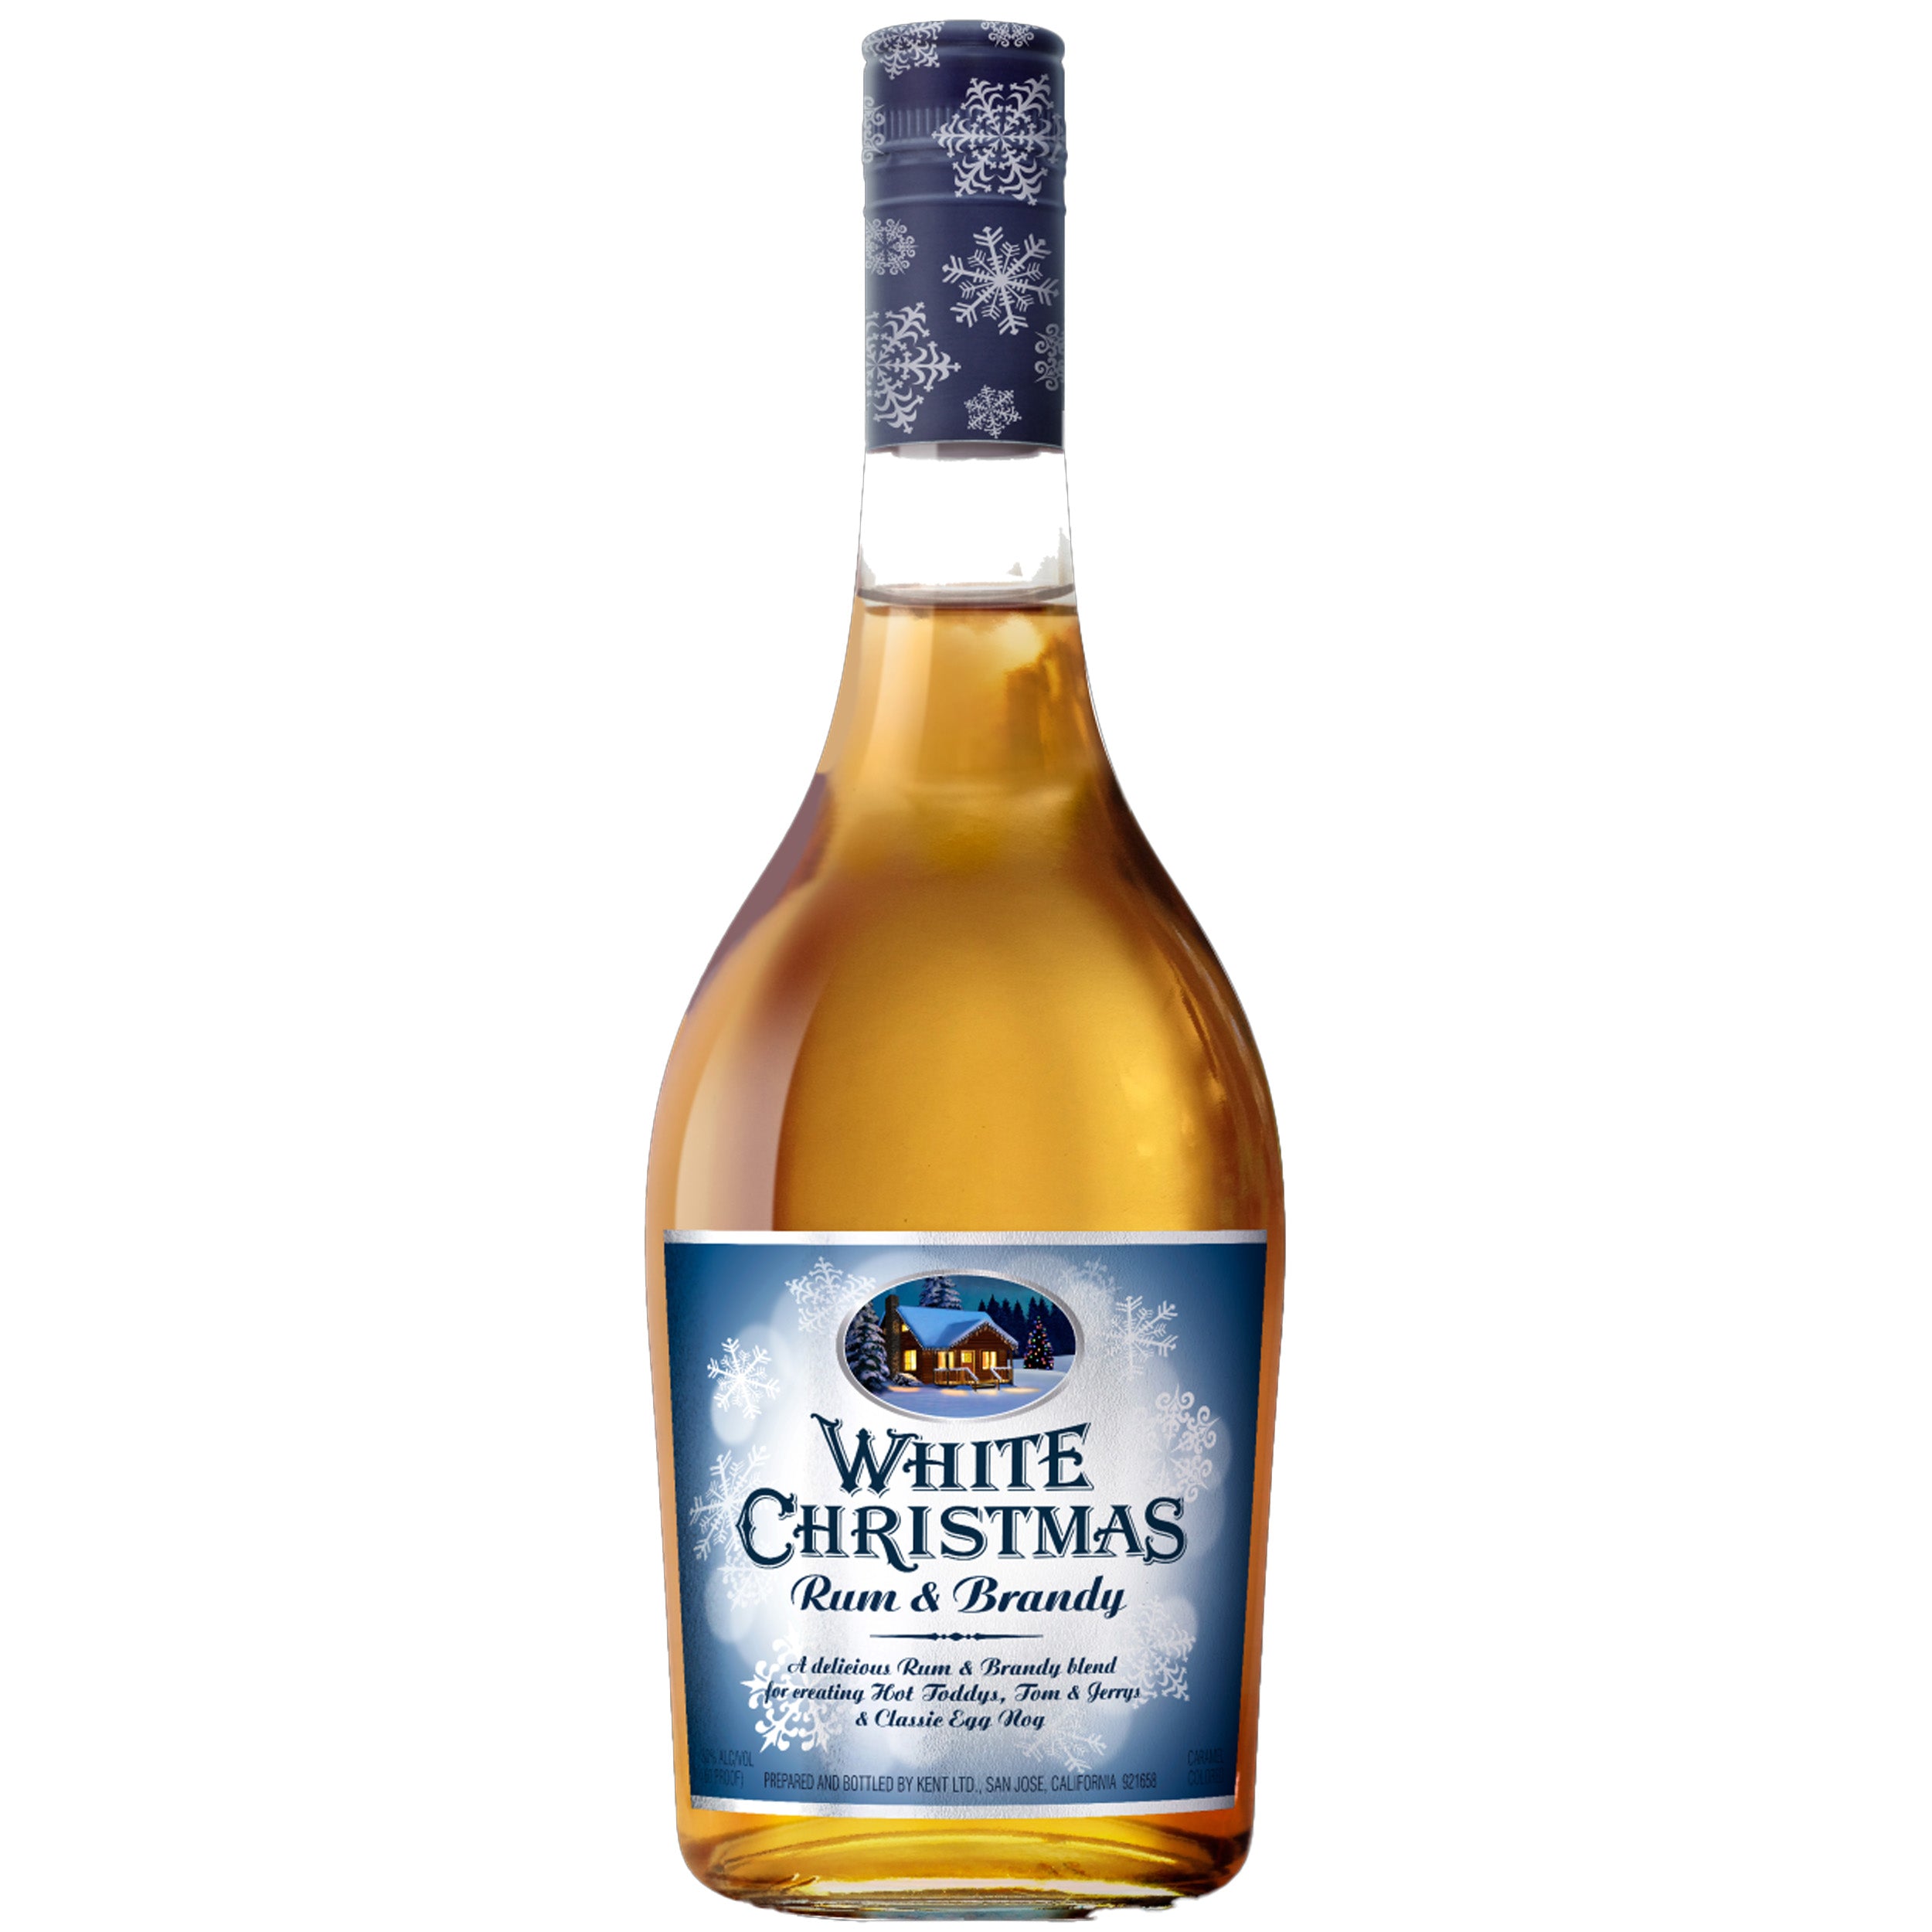 White Christmas Rum & Brandy